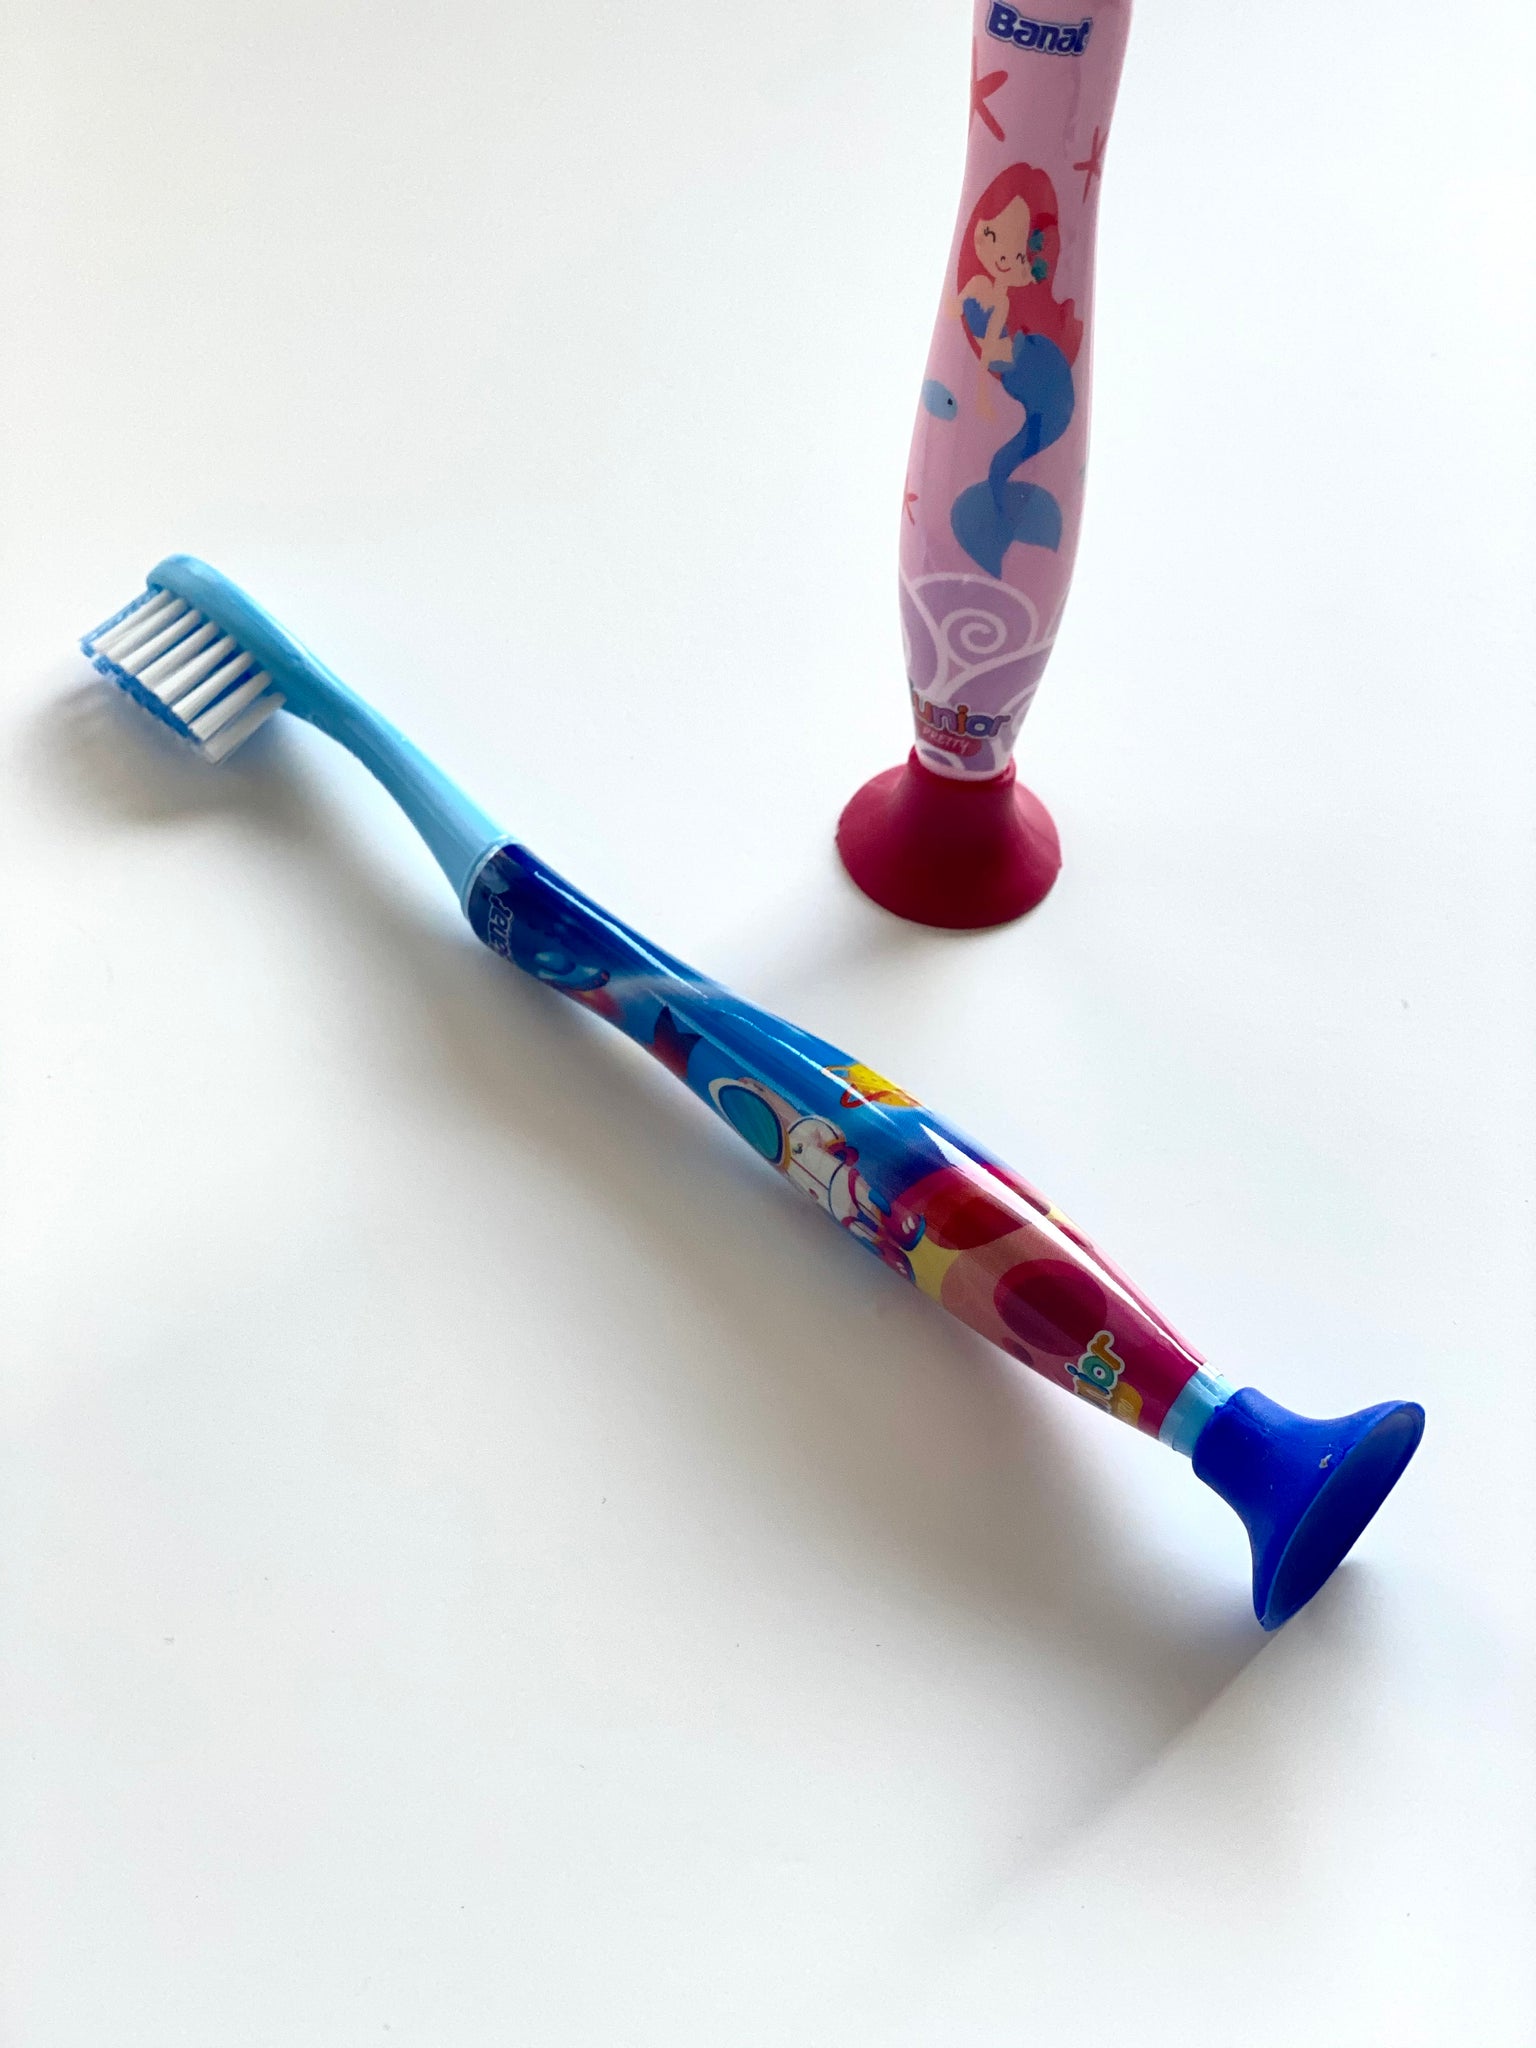 Banat Junior Astro Çocuk Diş Fırçası - Vakumlu Ayak